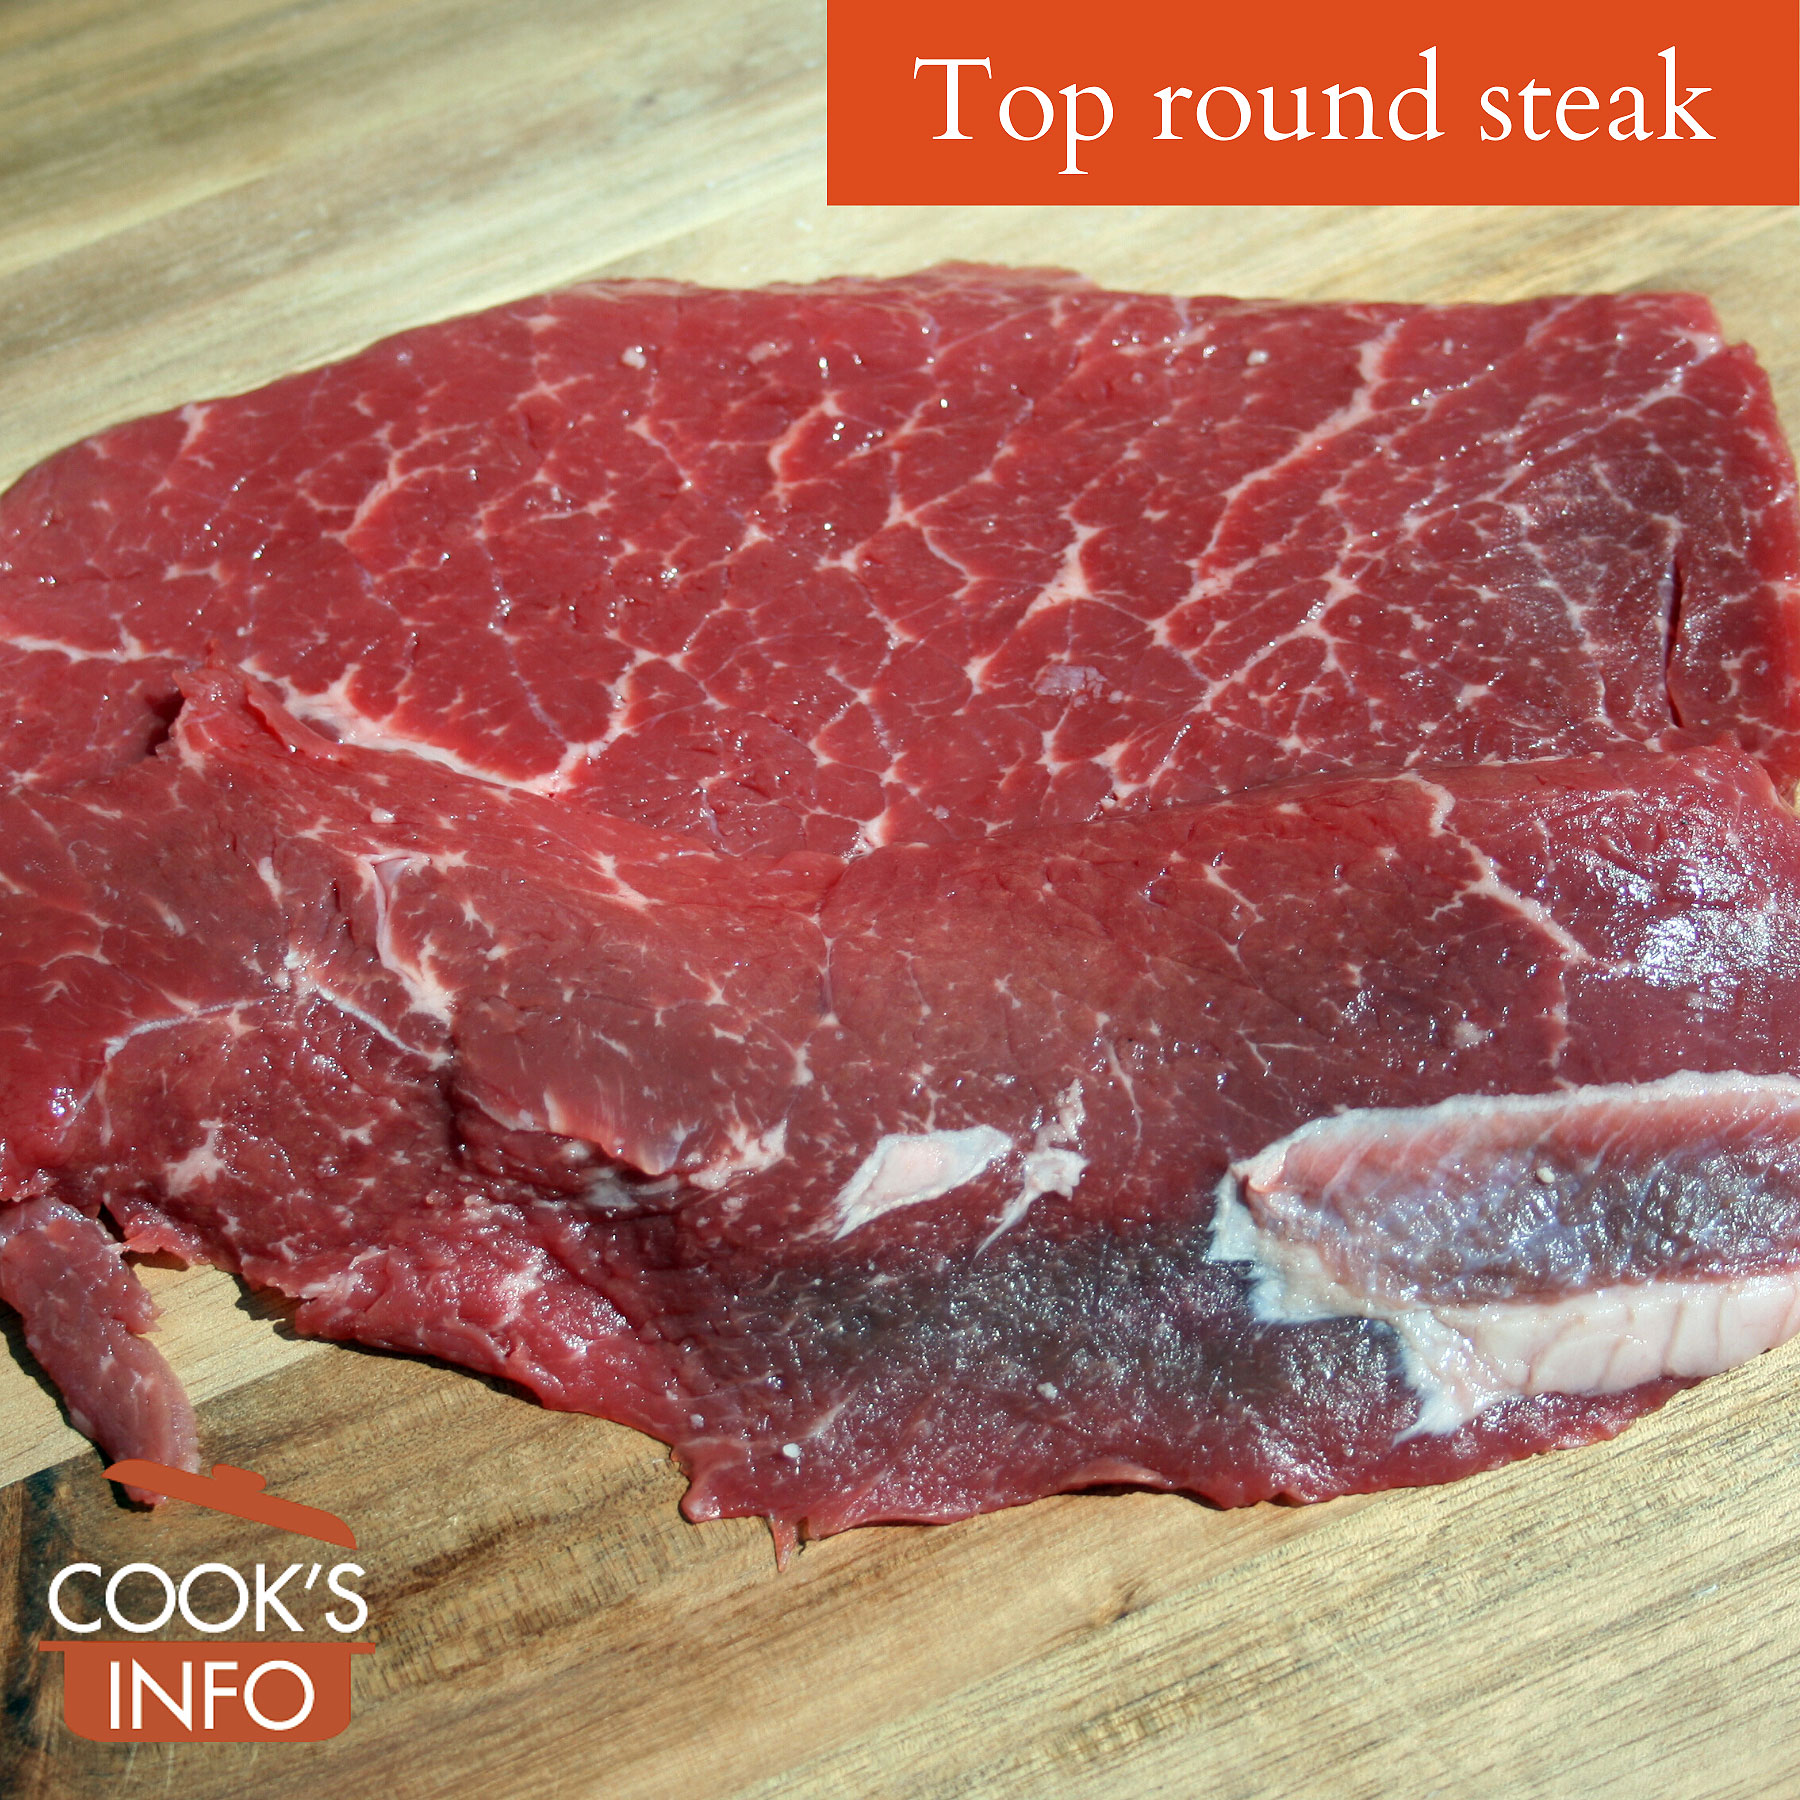 Top round steak, thin cut